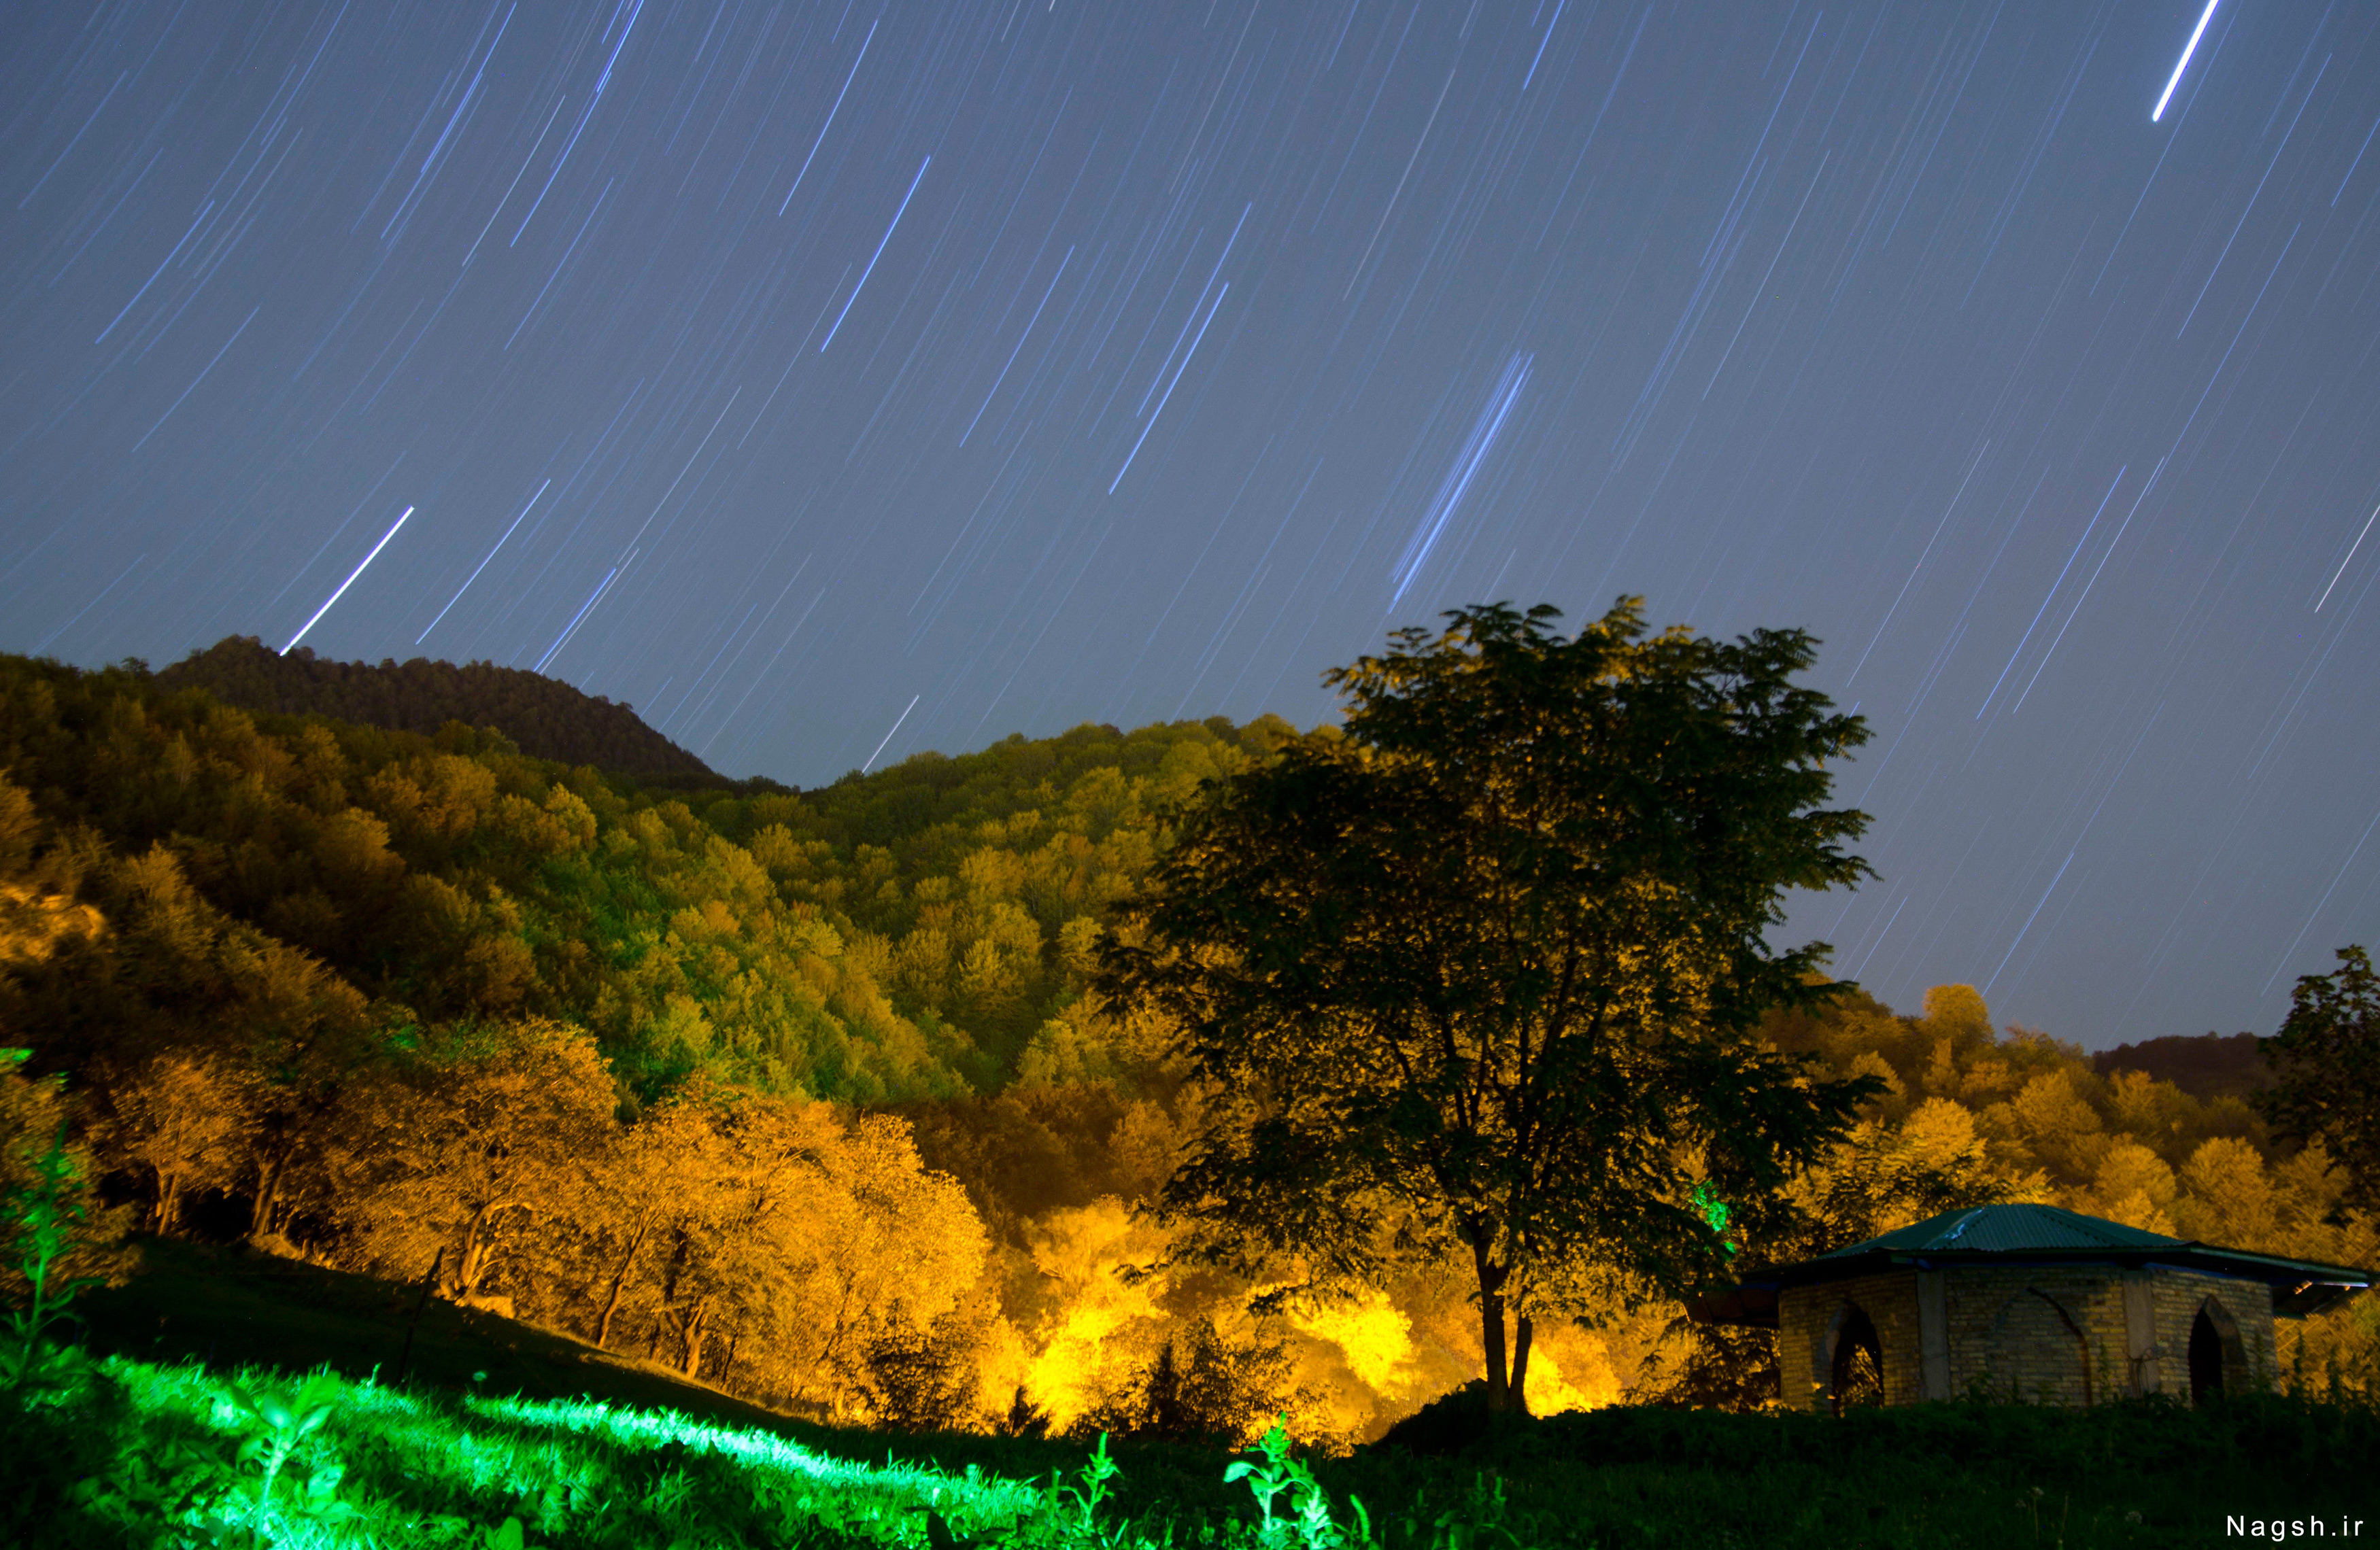 عکاسی در شب . عکس شبانه روستای اوزود - مازندران